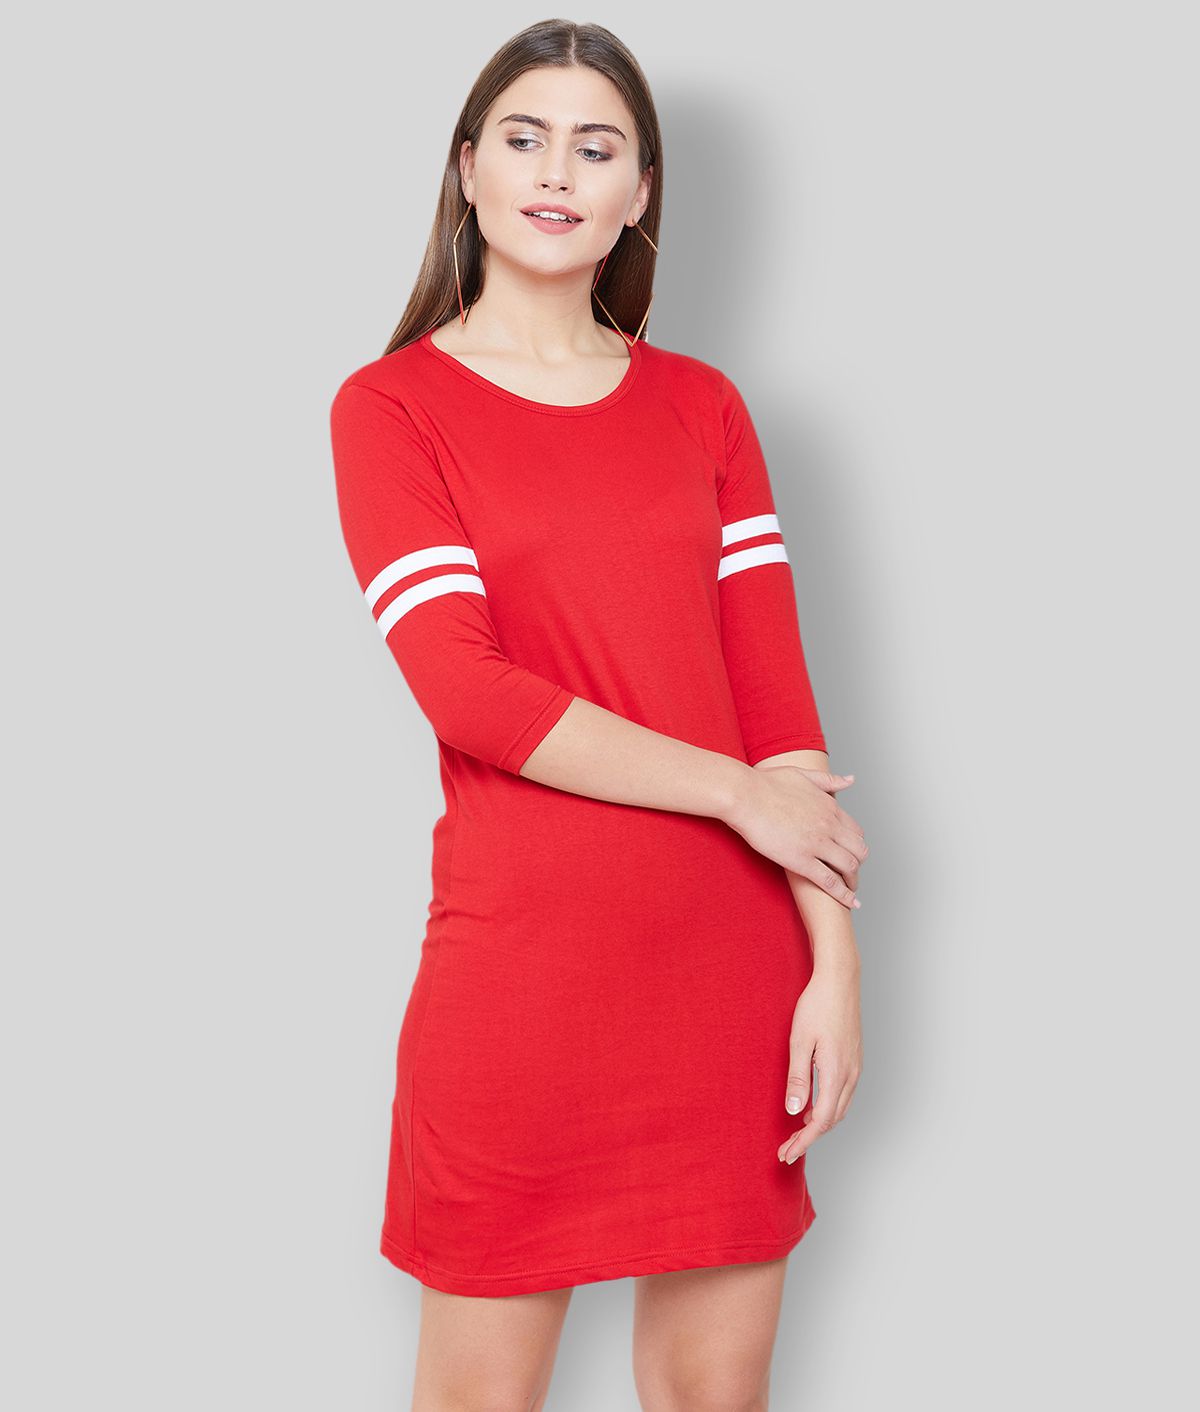 Jhankhi - Red Cotton Women's T-shirt Dress ( Pack of 1 )